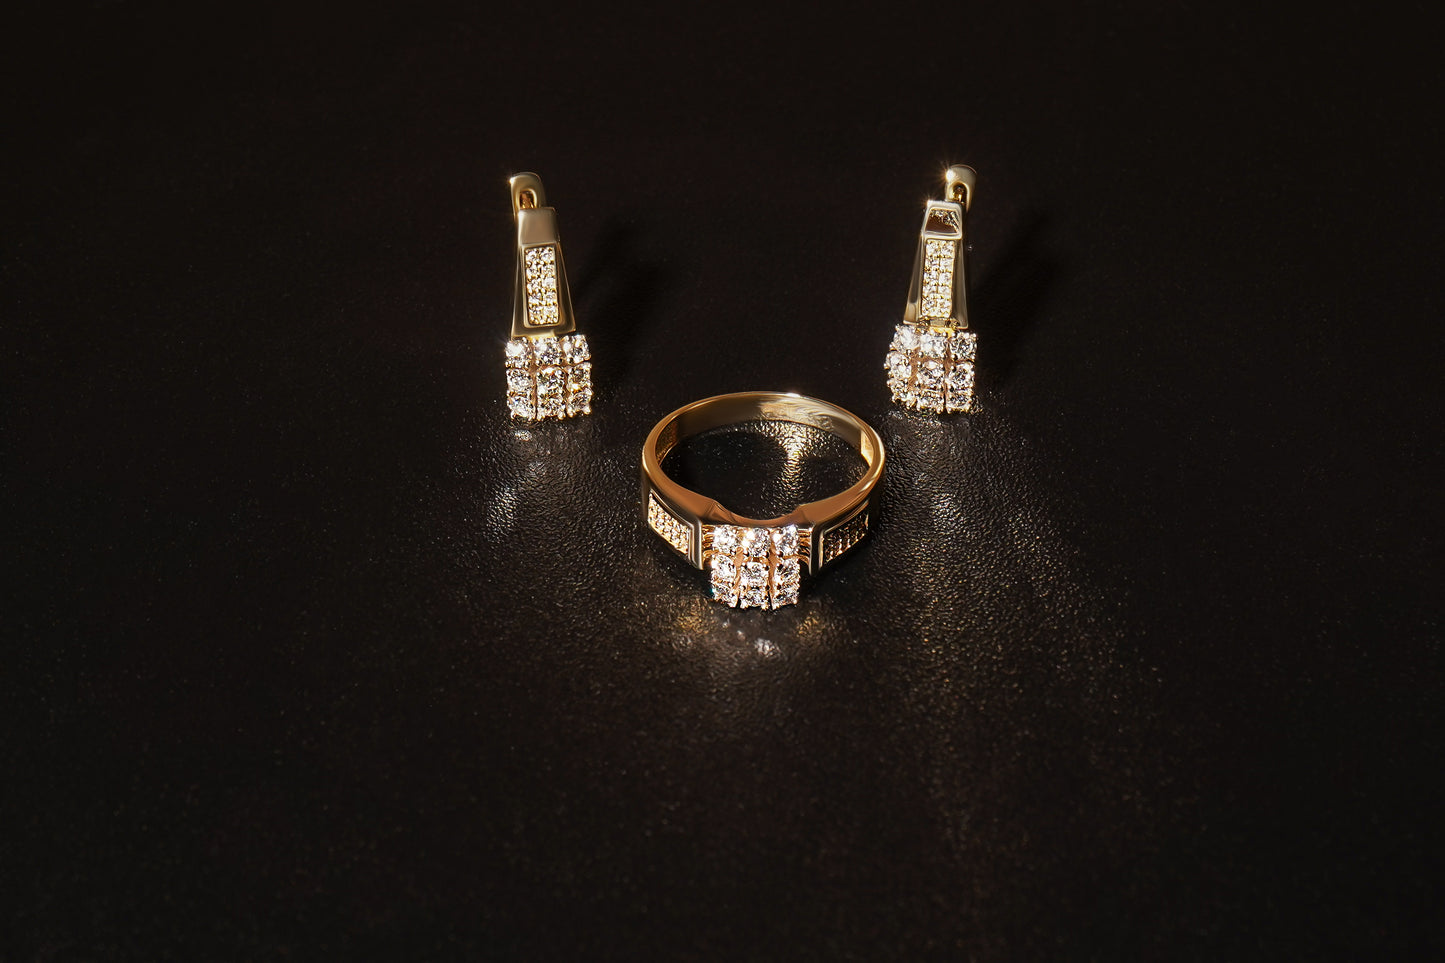 Набір сережки та каблучка з червоного золота з маленькими діамантами викладеними у формі квадрата. Зображений на чорному фоні